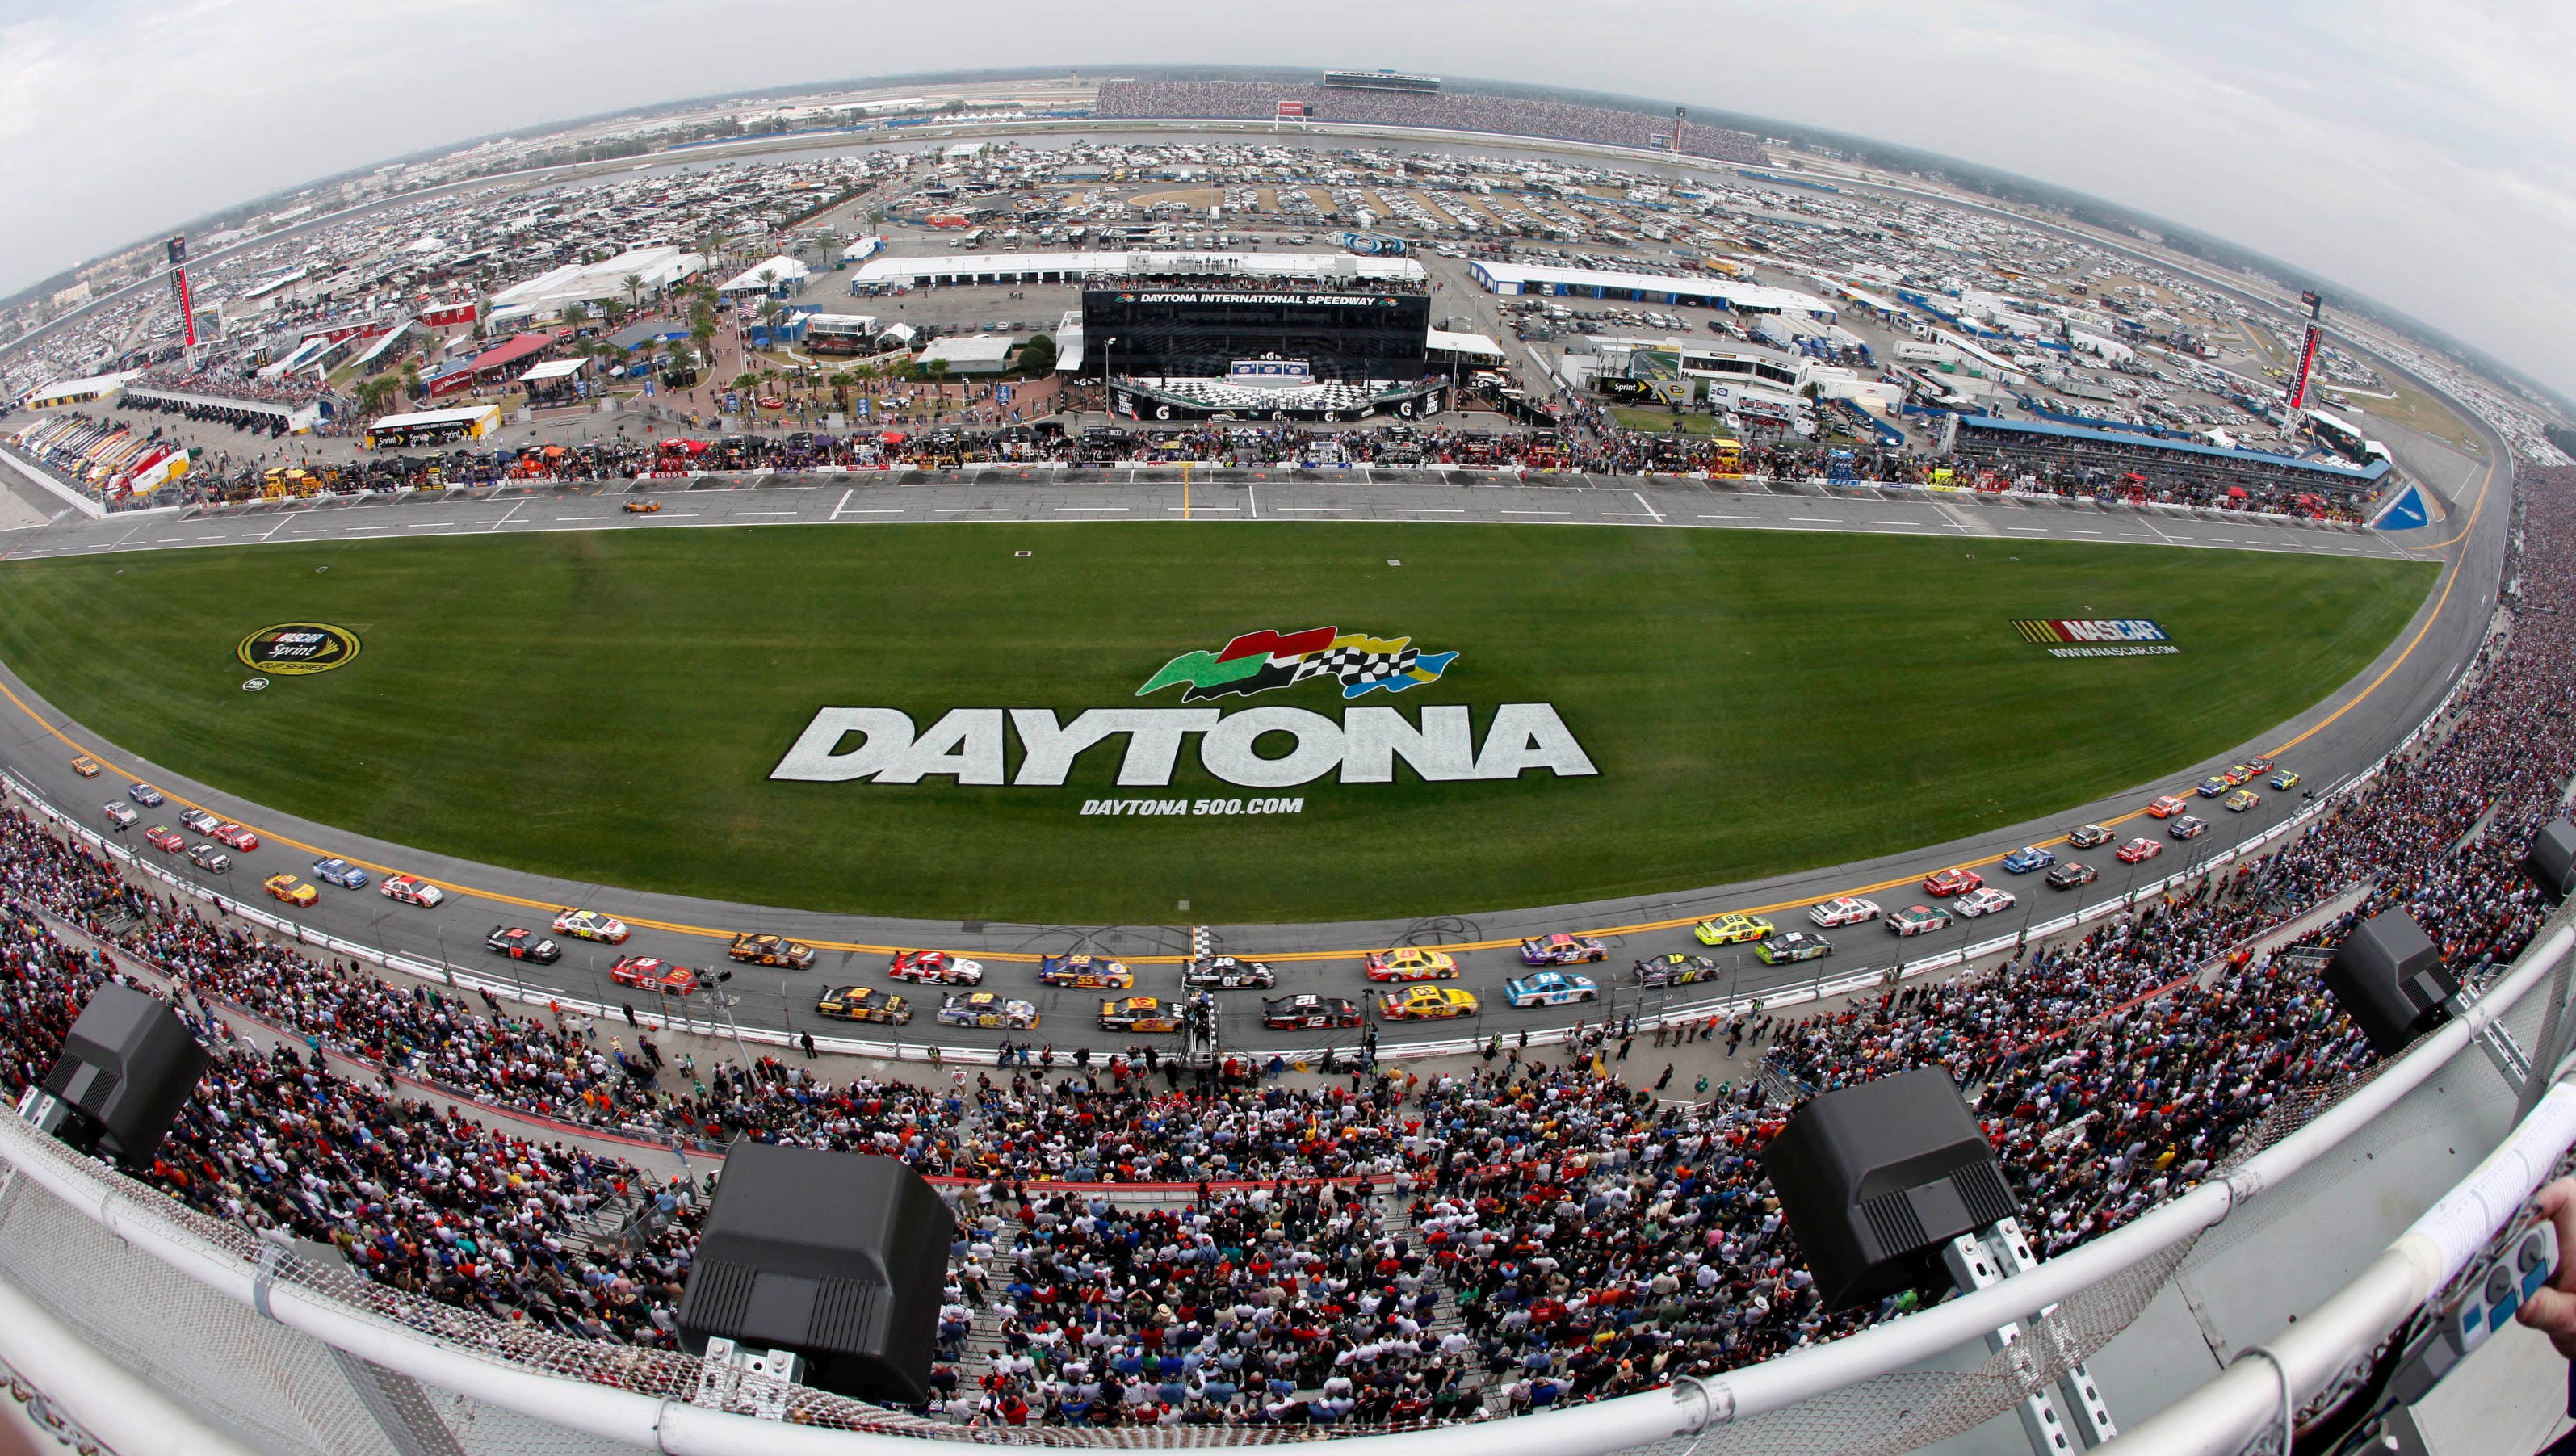 2014 Daytona Speedweeks schedule3200 x 1800